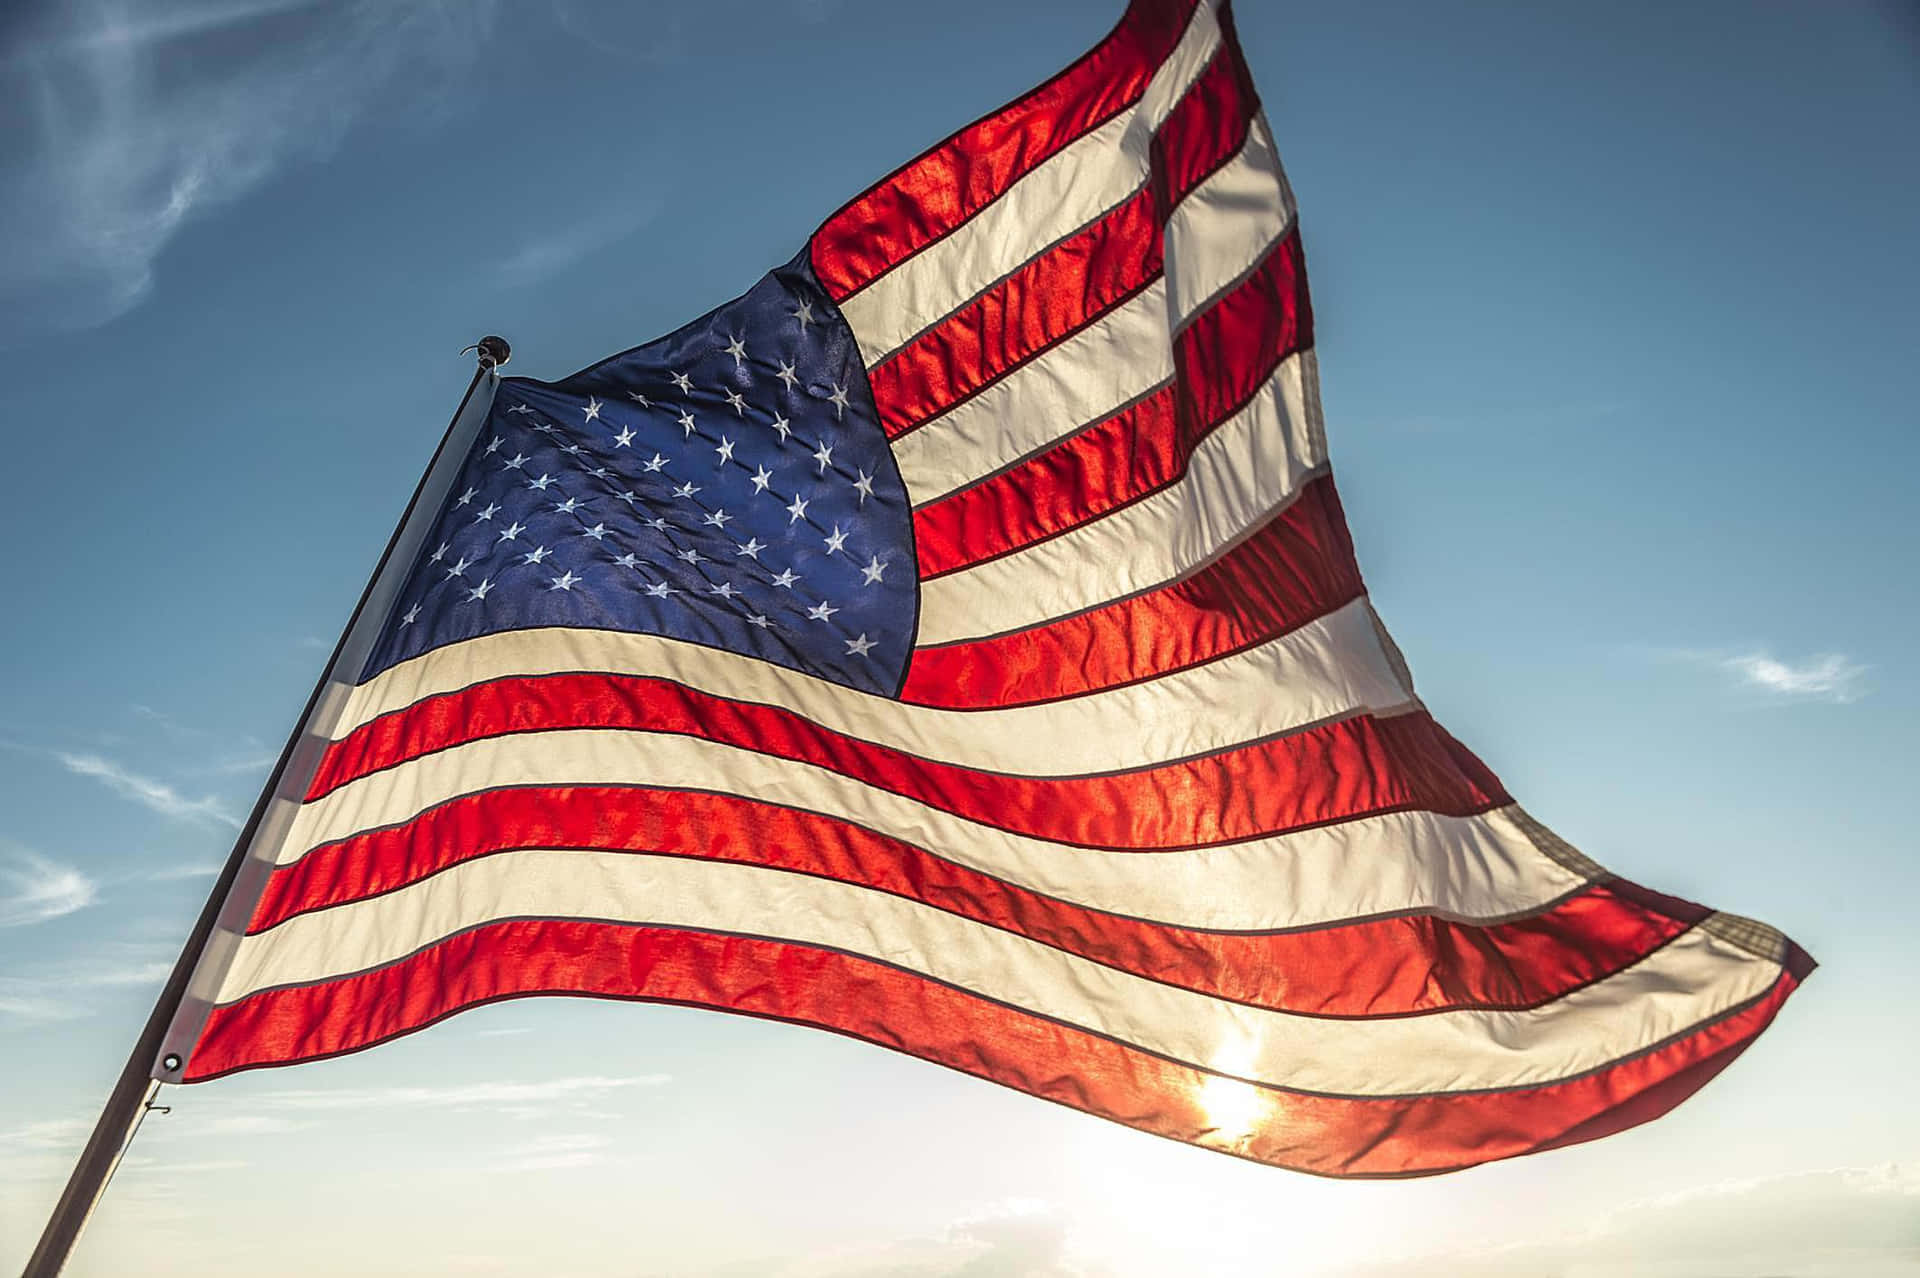 Immagini Della Bandiera Americana